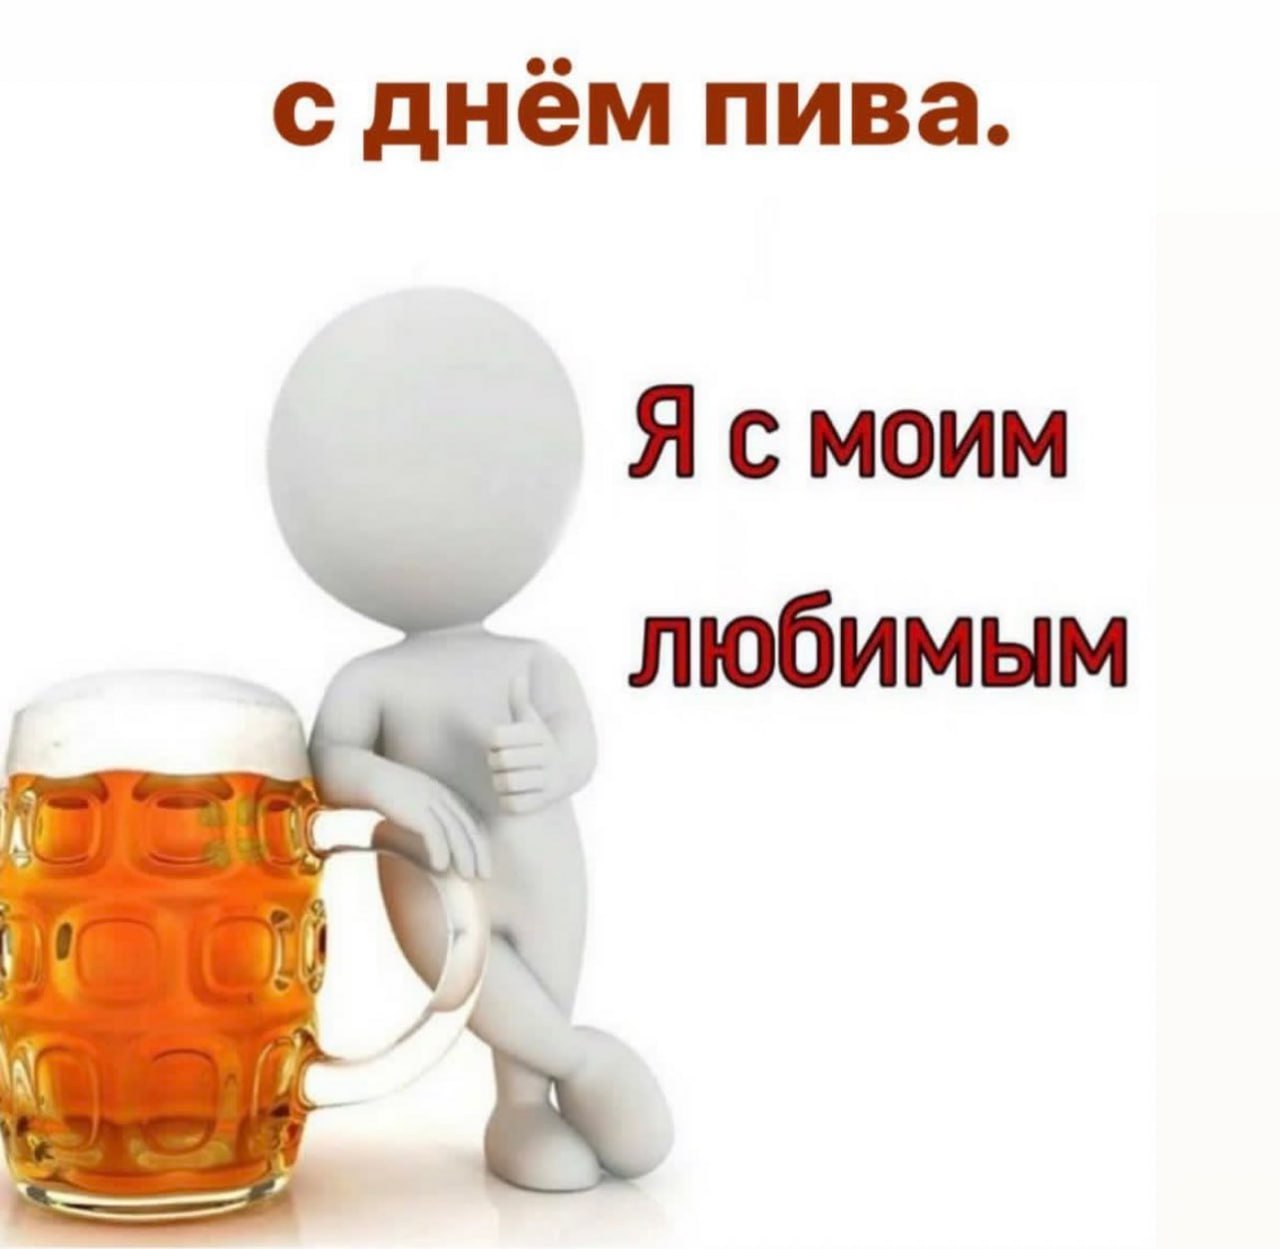 Люблю попить. Пиво Мем. Мемы про пиво. Смешные мемы про пиво. Люблю пить пиво.